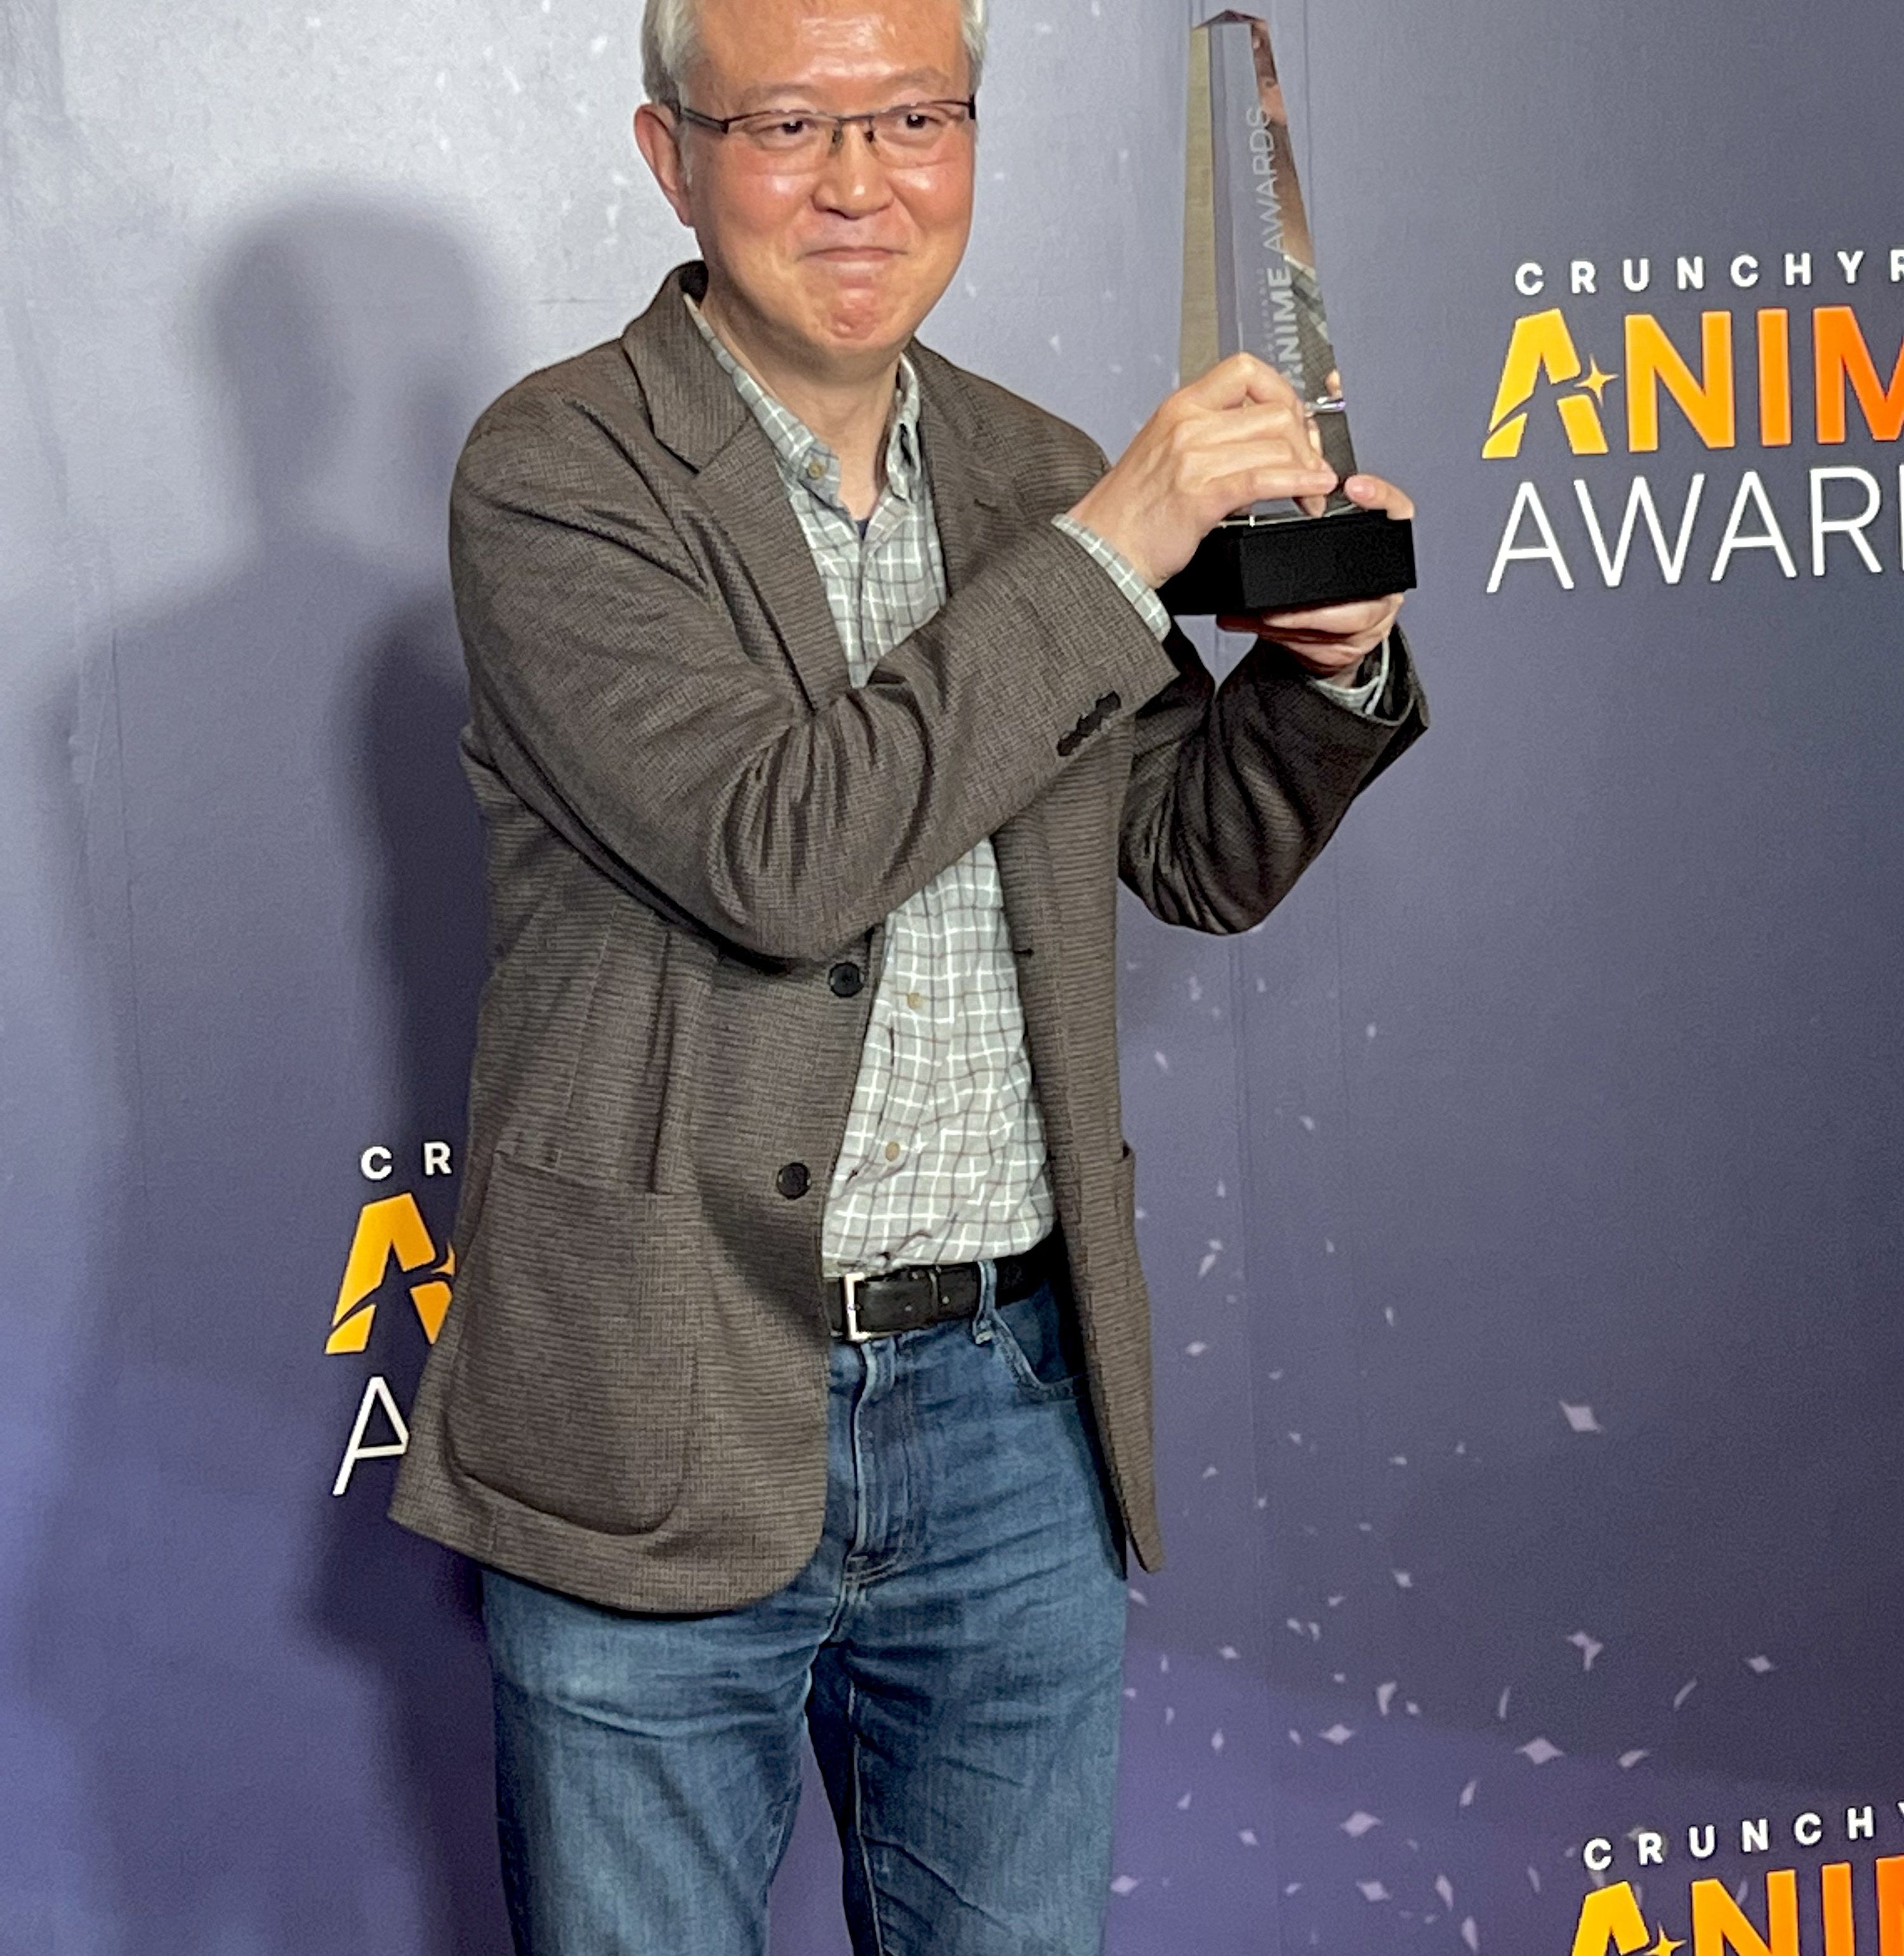 Anime Awards: 'Cyberpunk: Mercenários' leva o prêmio de Animê do